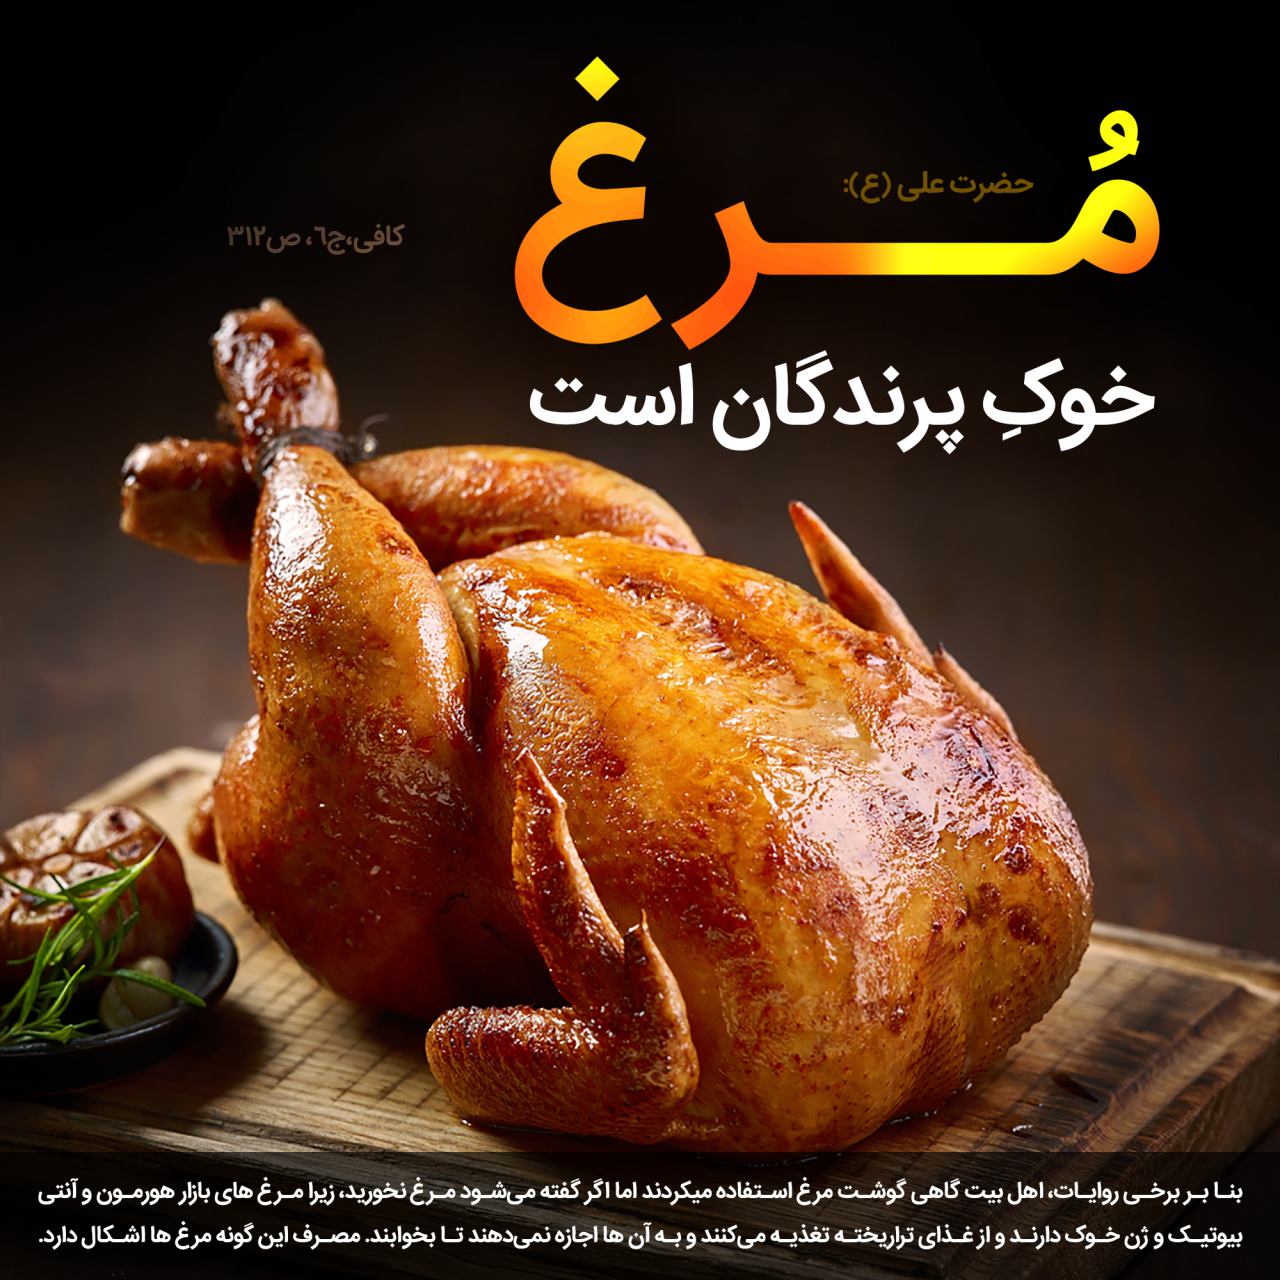 مرغ،خوک،خوک پرندگان،گوشت،گوشت مرغ،گوشت کبوتر،گوشت پرنده،مرغ در روایات،طب اسلامی،آشپزی اسلامی